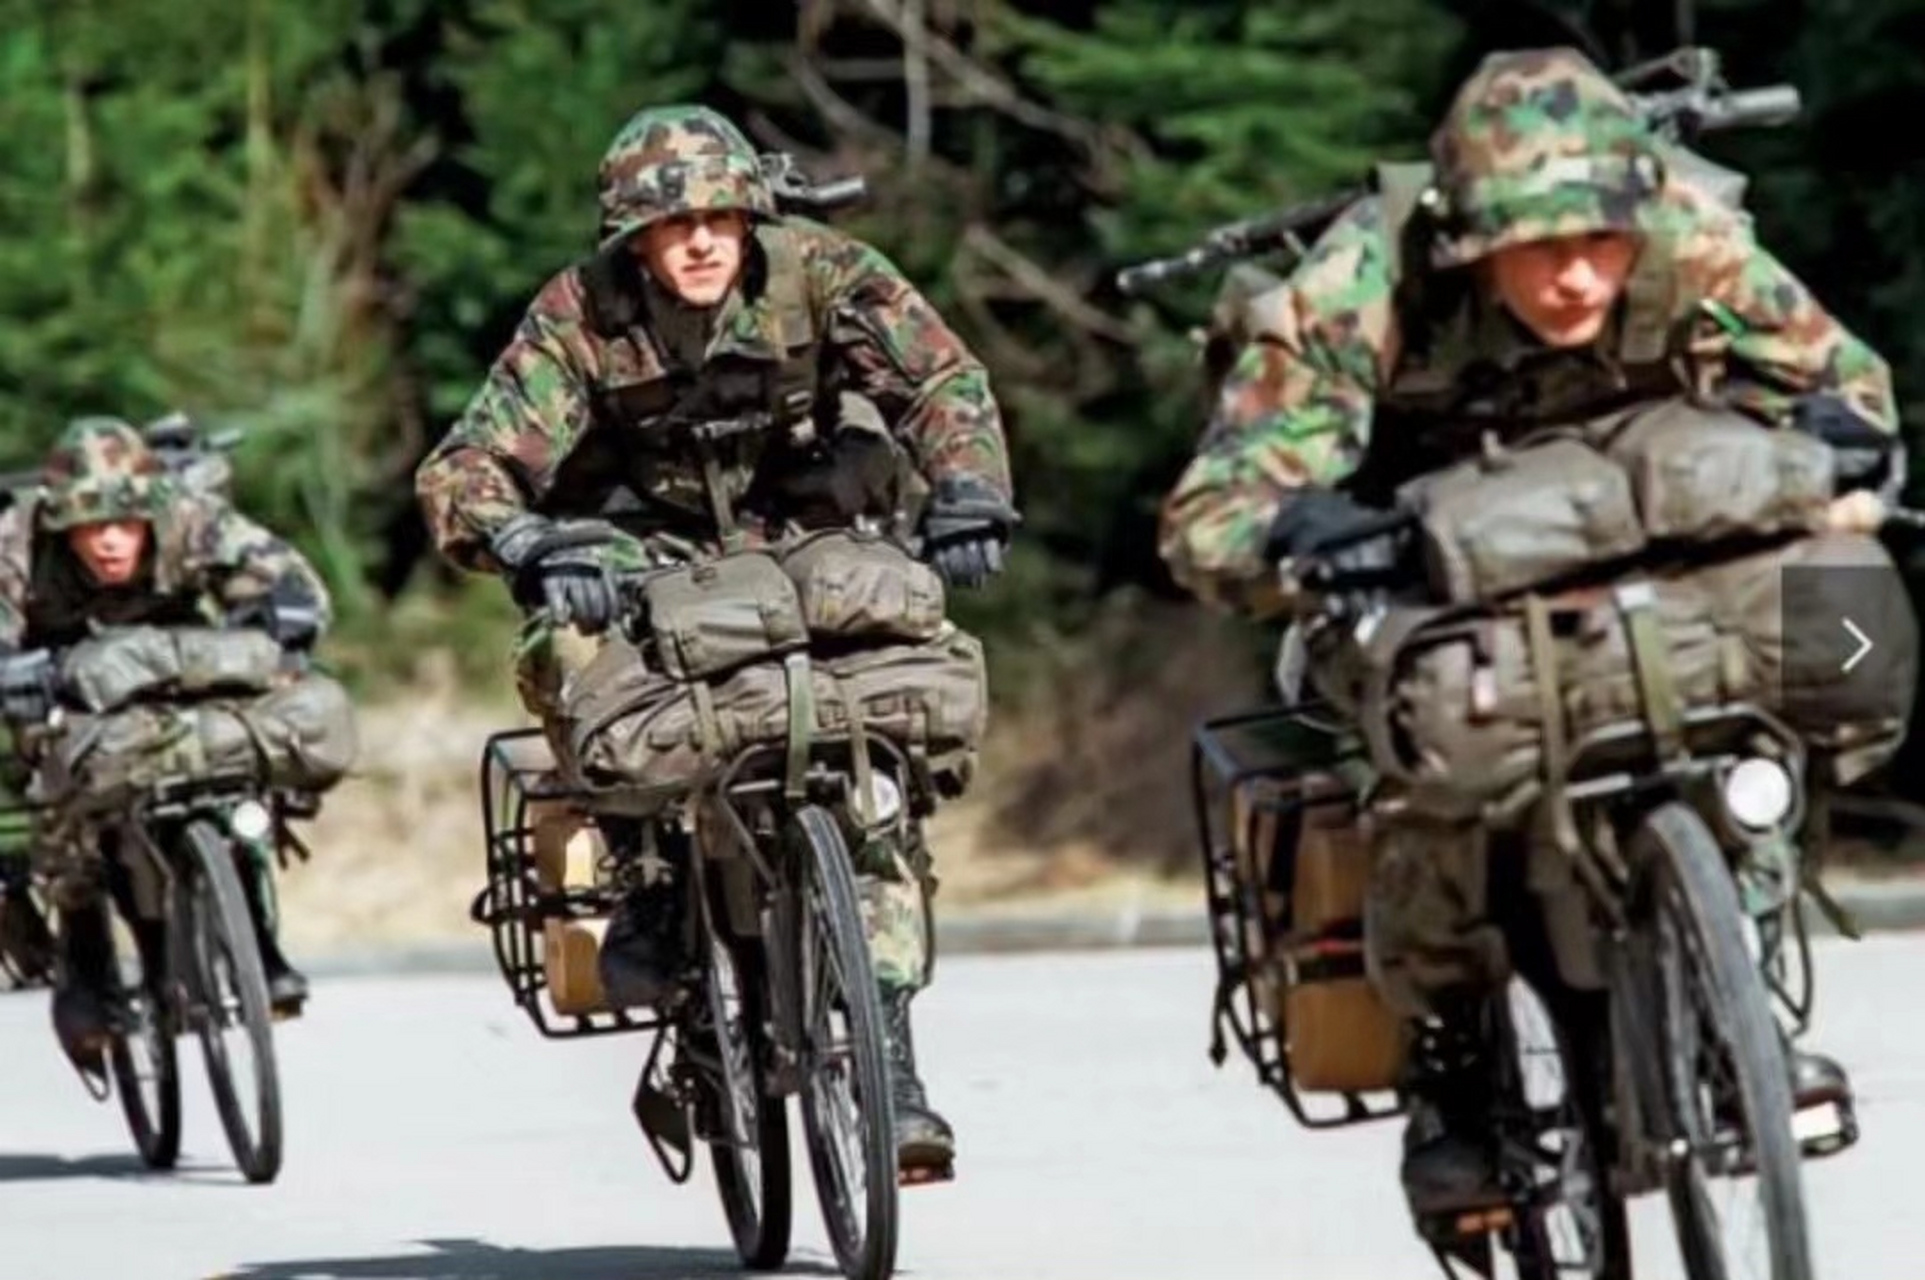 瑞士被誉为自行车大国,其军队也将自行车作为单兵运输装备,并经过改良